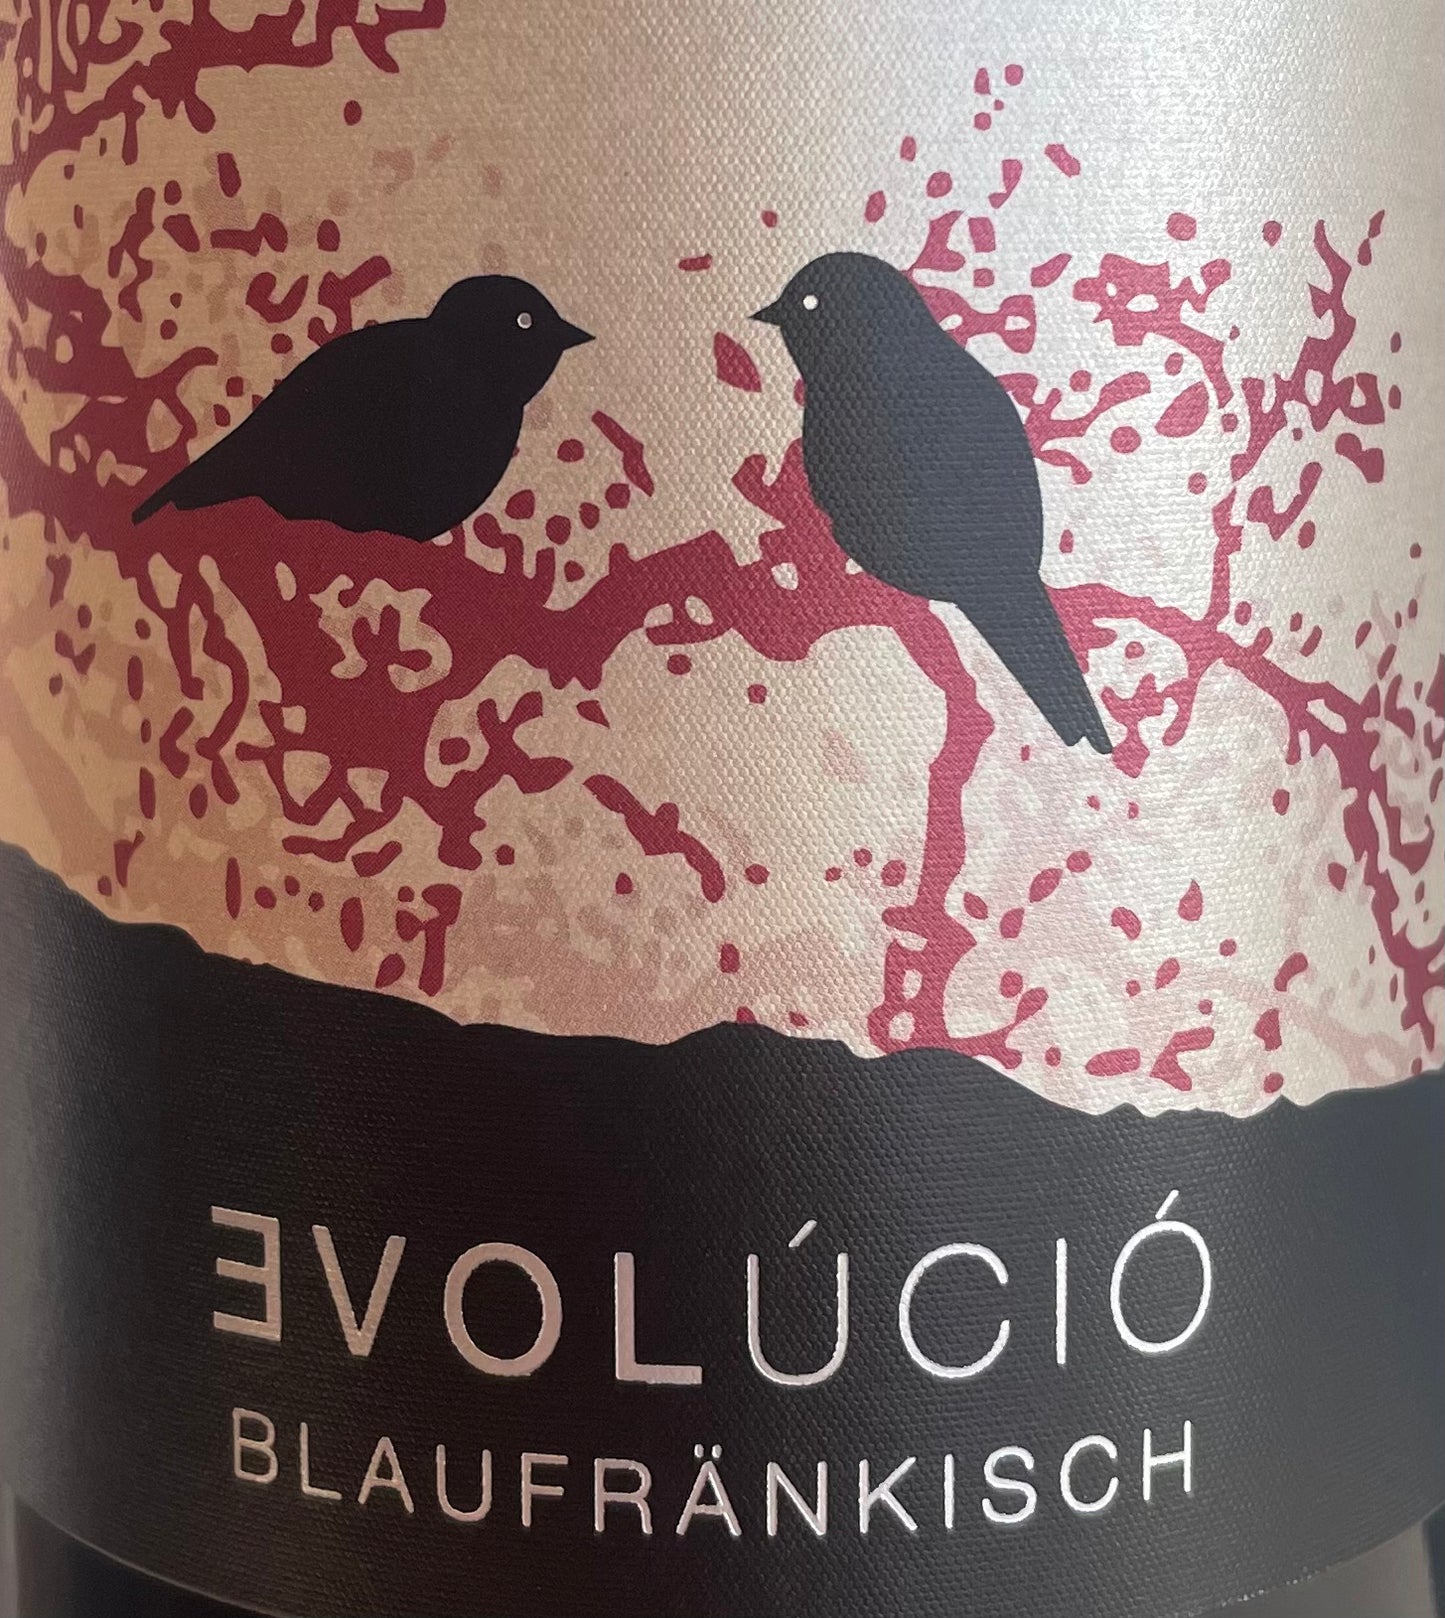 Evolucio - Blaufrankisch